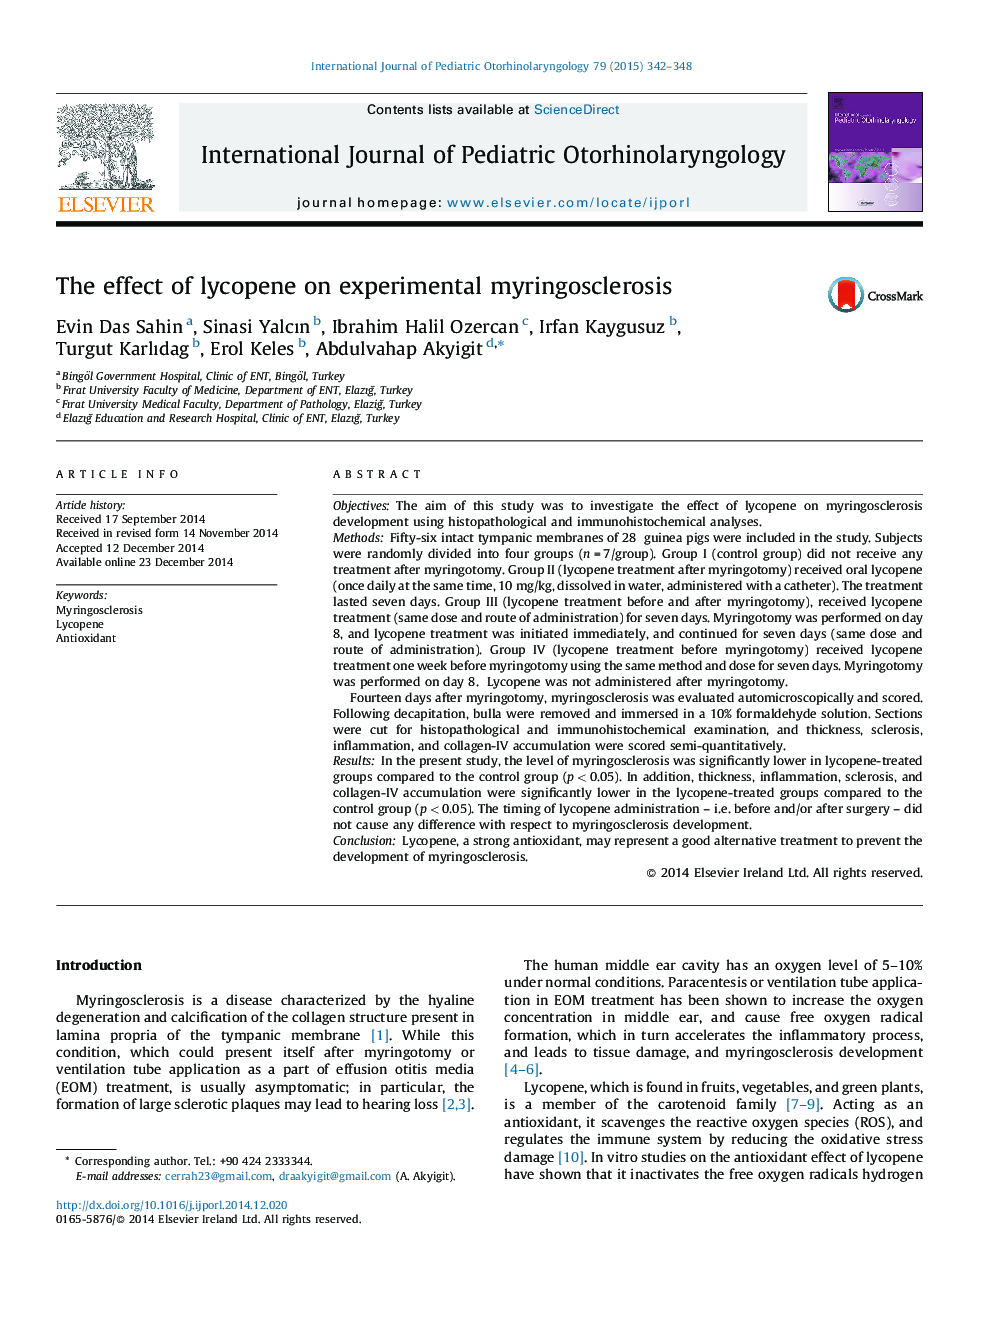 The effect of lycopene on experimental myringosclerosis